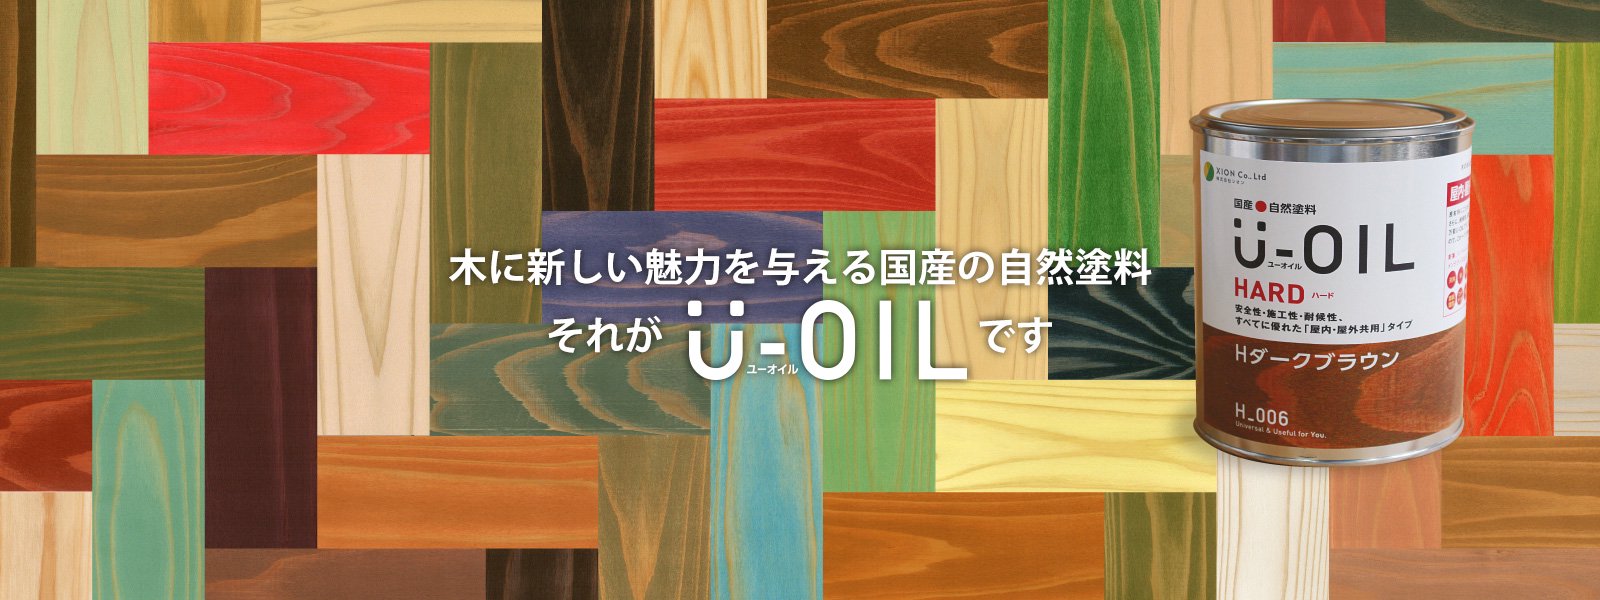 正規販売店] U-OIL ユーオイル オイルステイン ハード H61 エメラルドグリーン 9L 屋内外 木部用 国産 自然塗料 